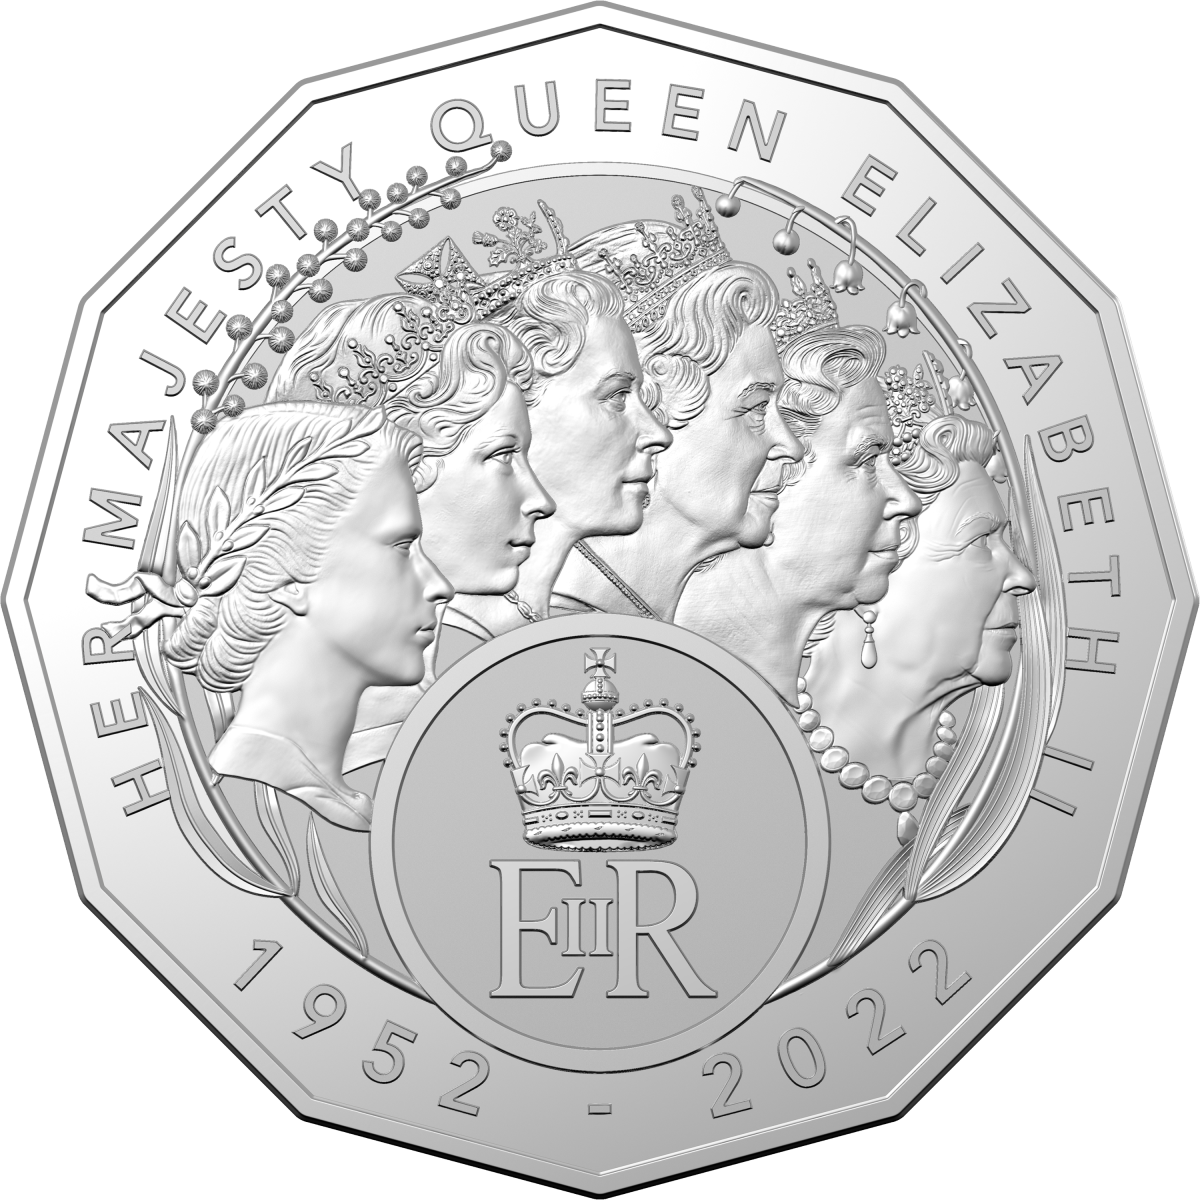 Queen Elizabeth II commemorative coin